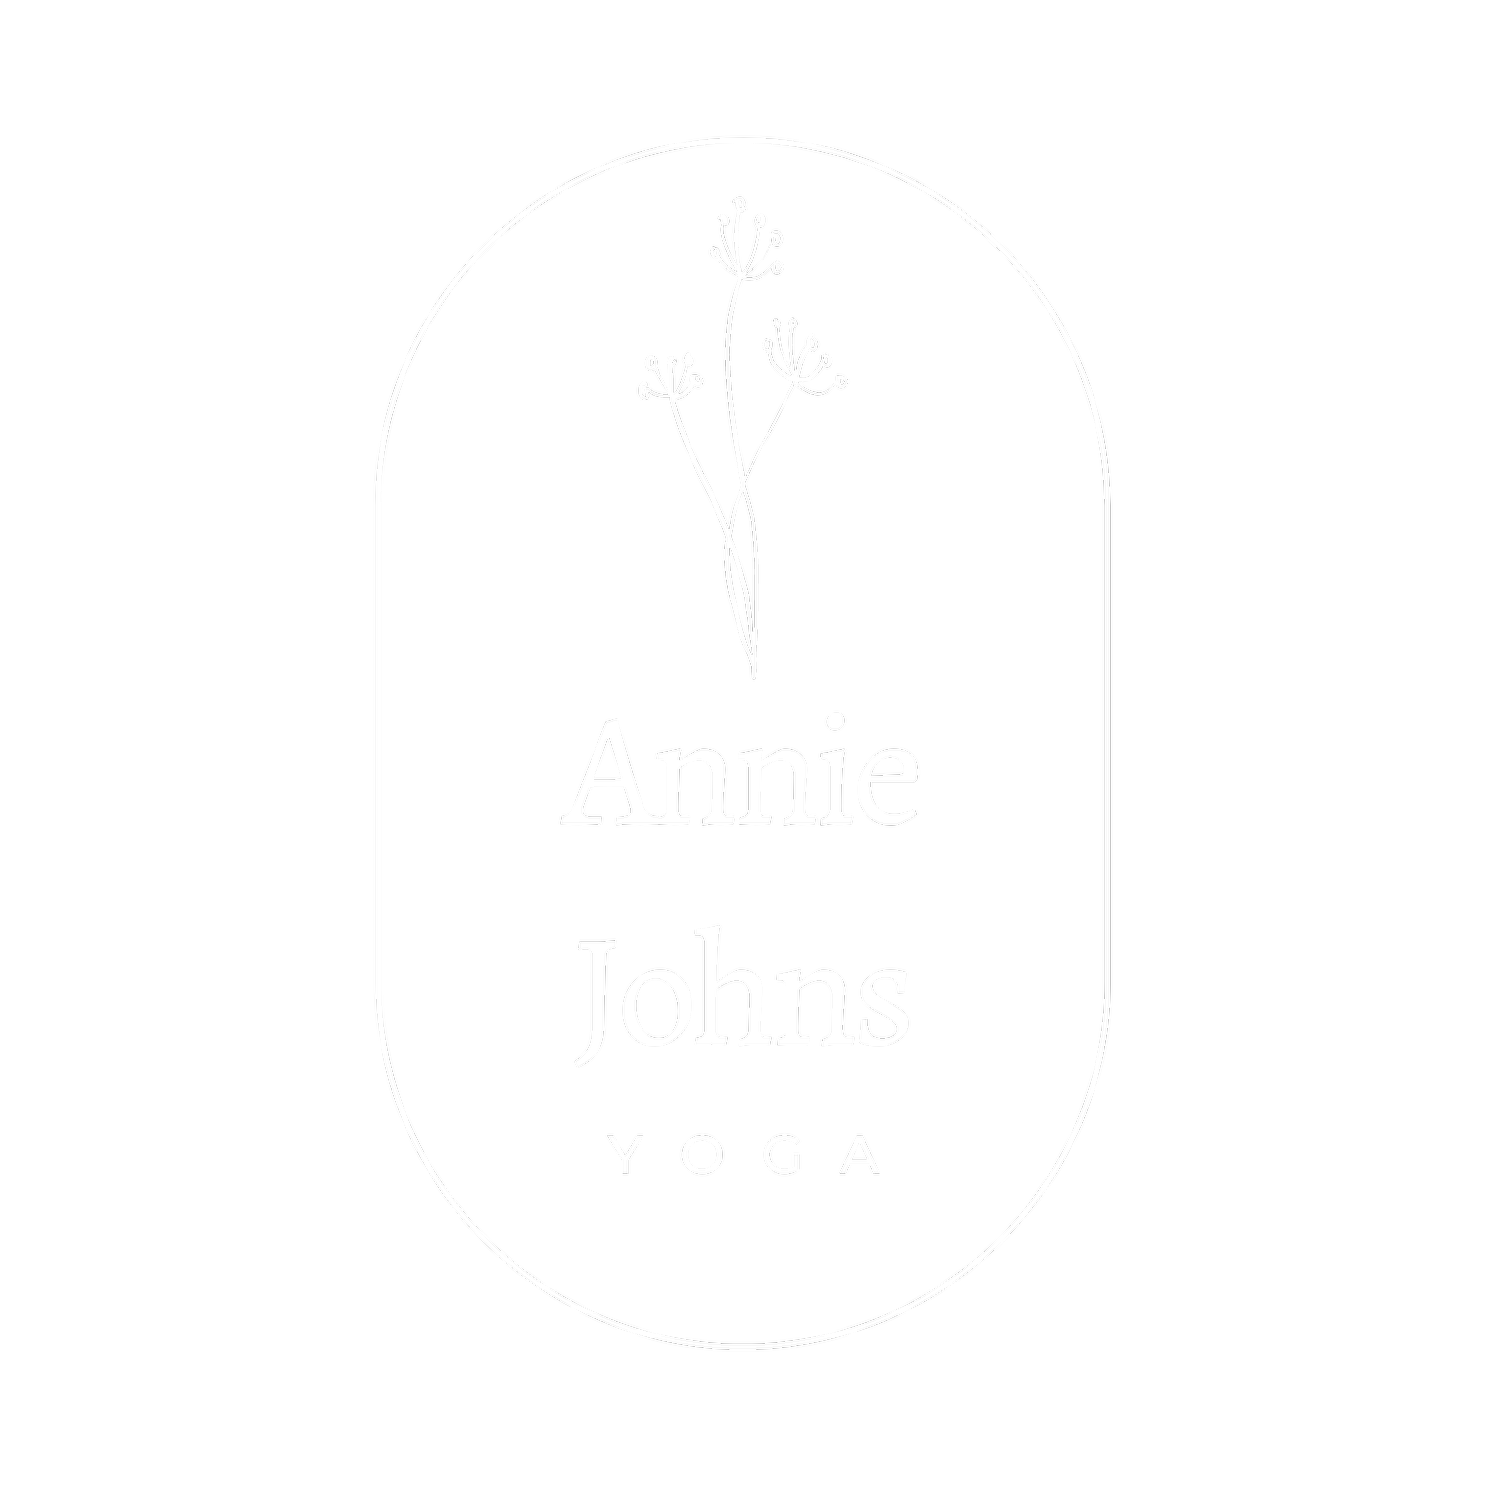 Annie Johns Yoga